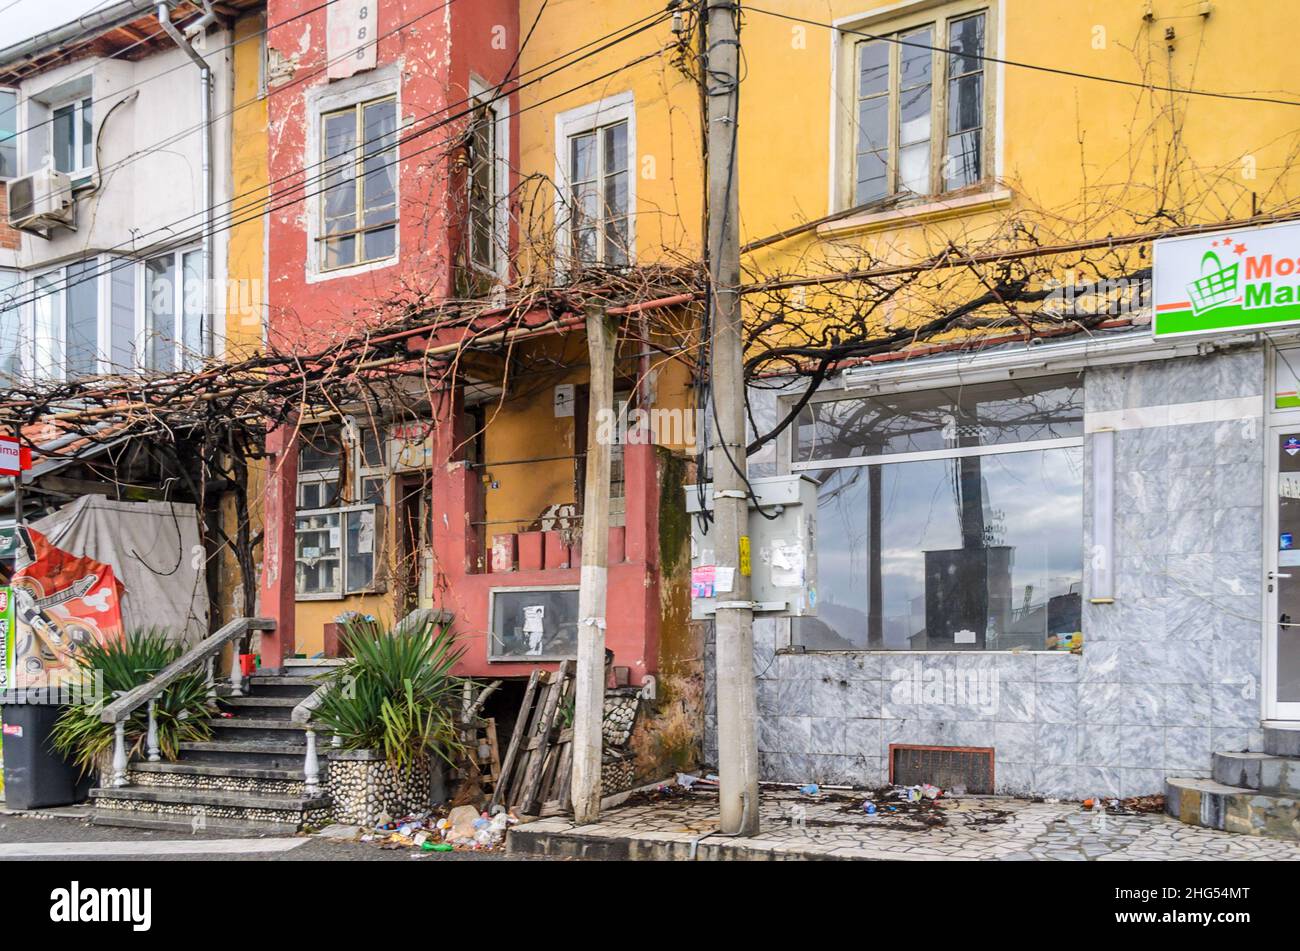 Magasins et maisons abandonnés dans un quartier pauvre en Bulgarie du Sud, dans les Balkans, en Europe.Bâtiments multicolores en mauvais état dans une rangée. Banque D'Images